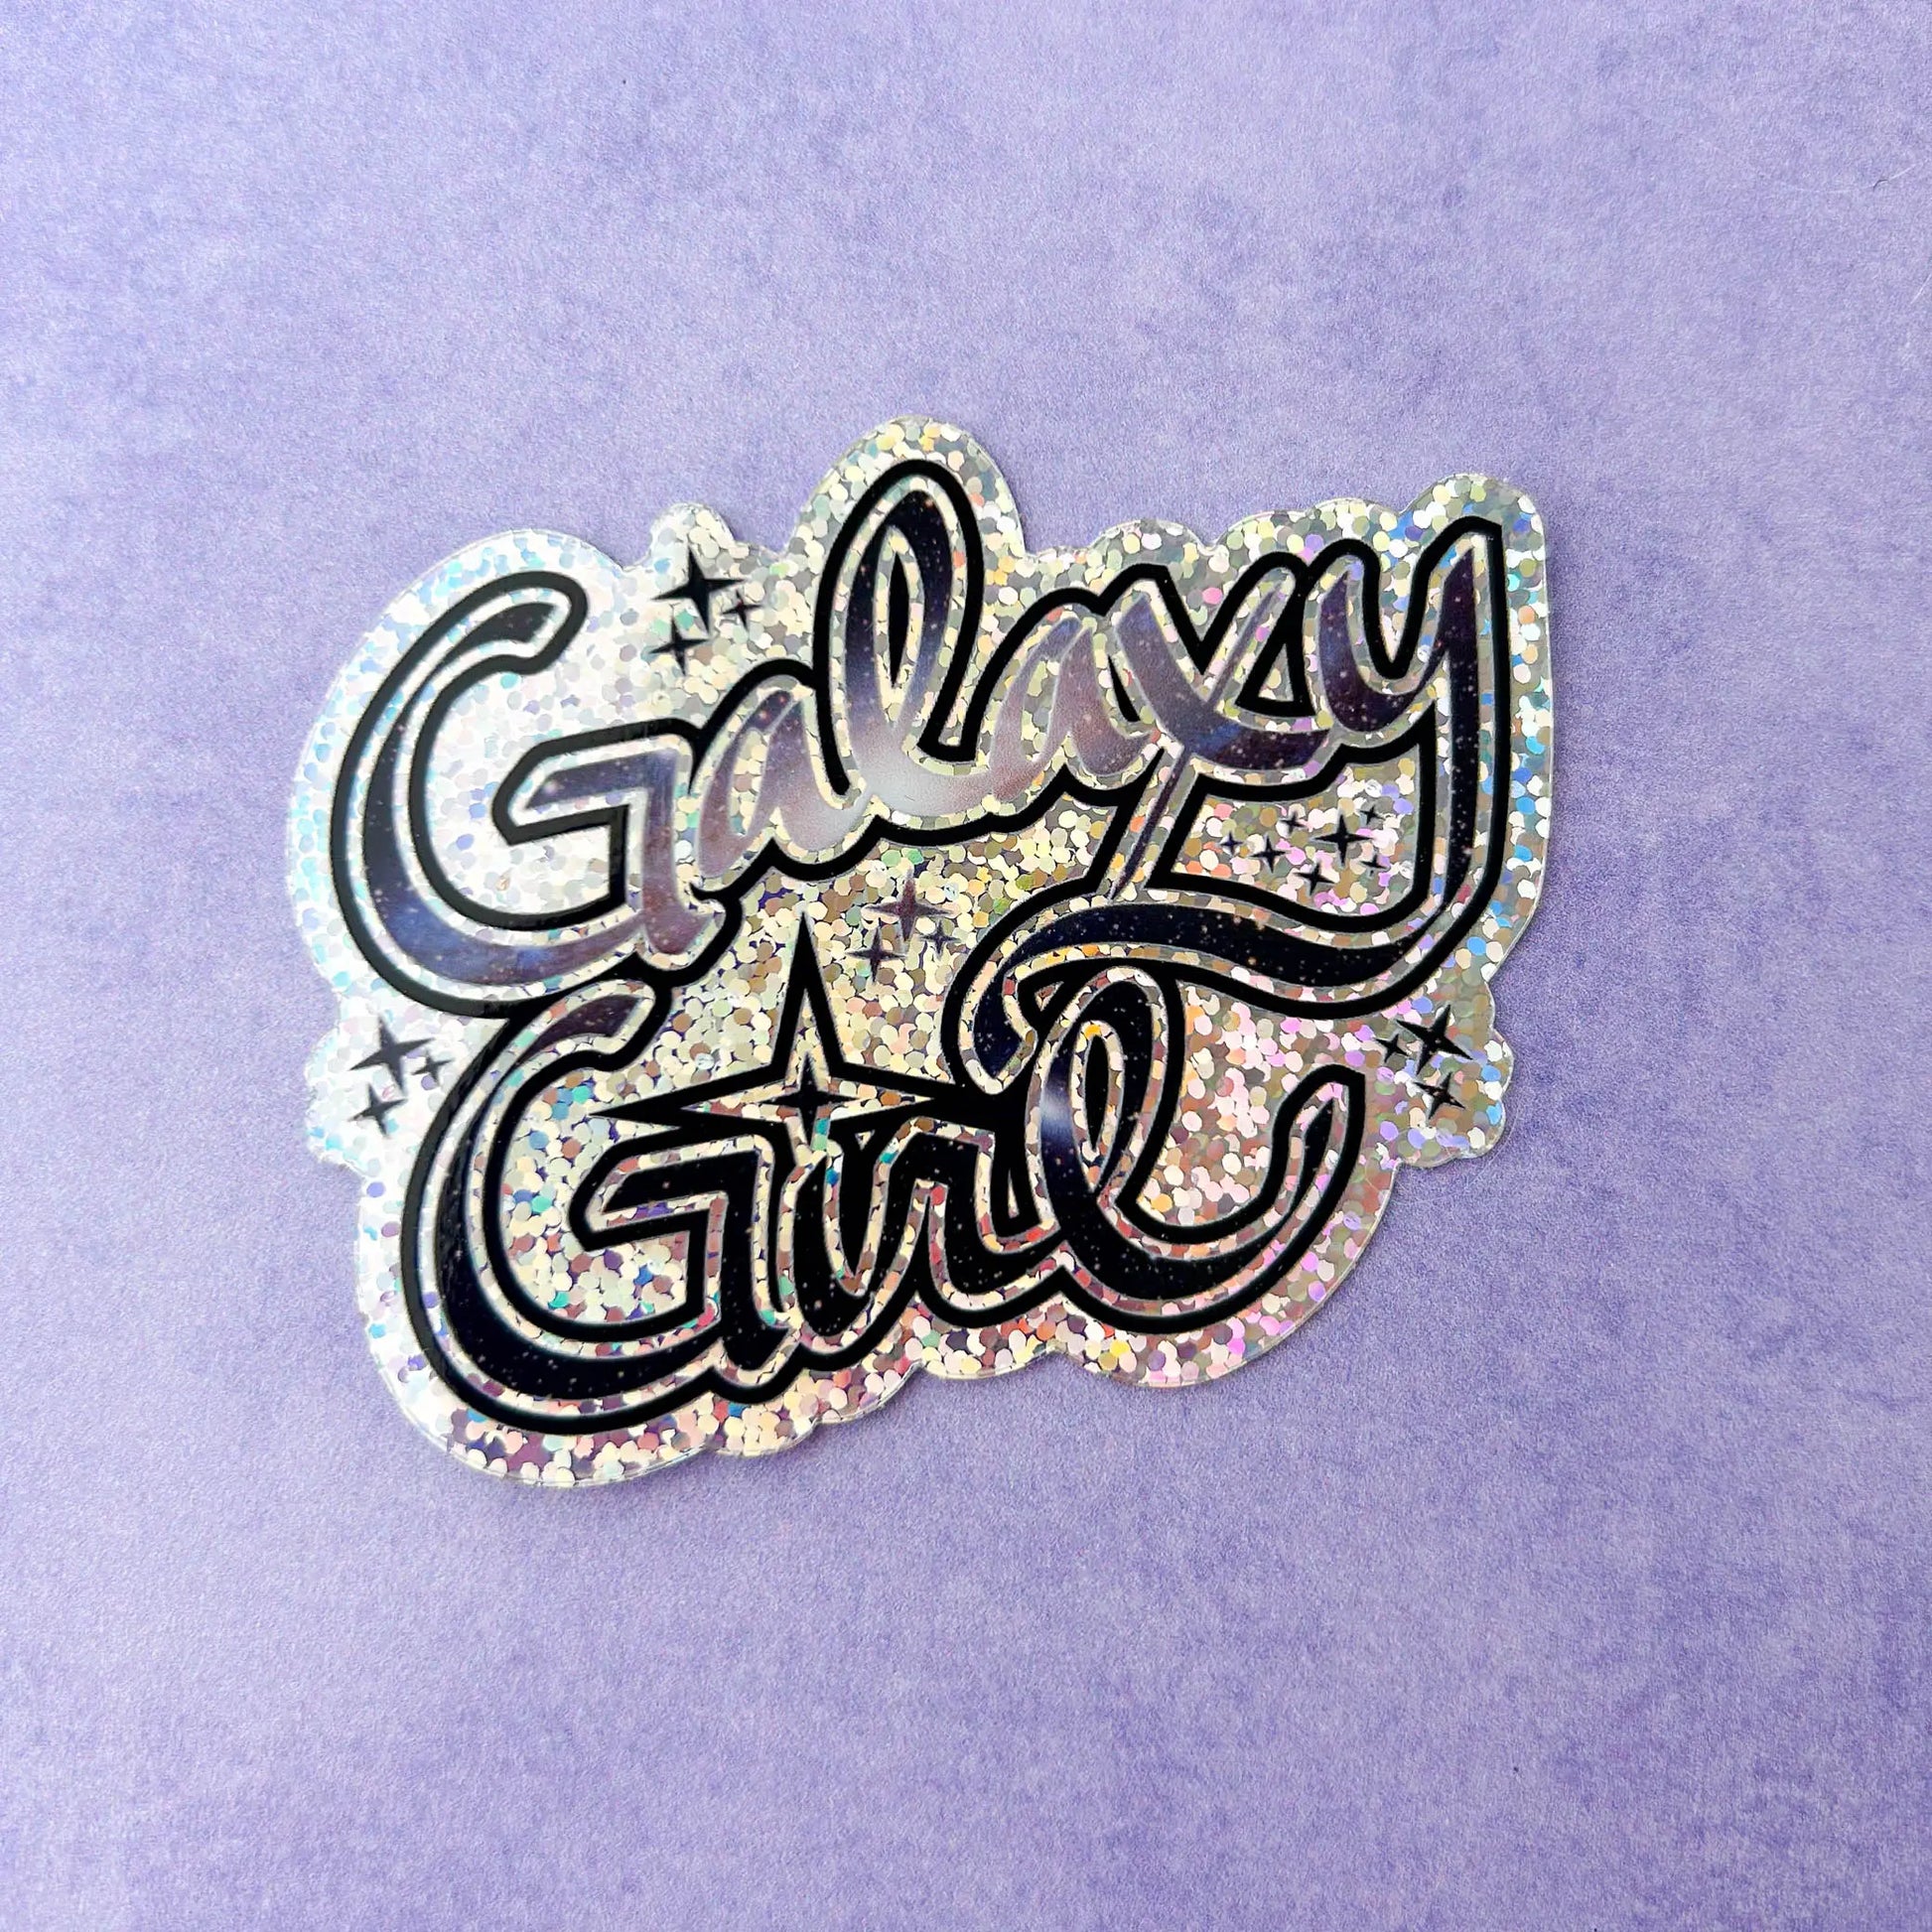 Galaxy Girl Die-Cut Sparkle 3" Vinyl Sticker against a purple background